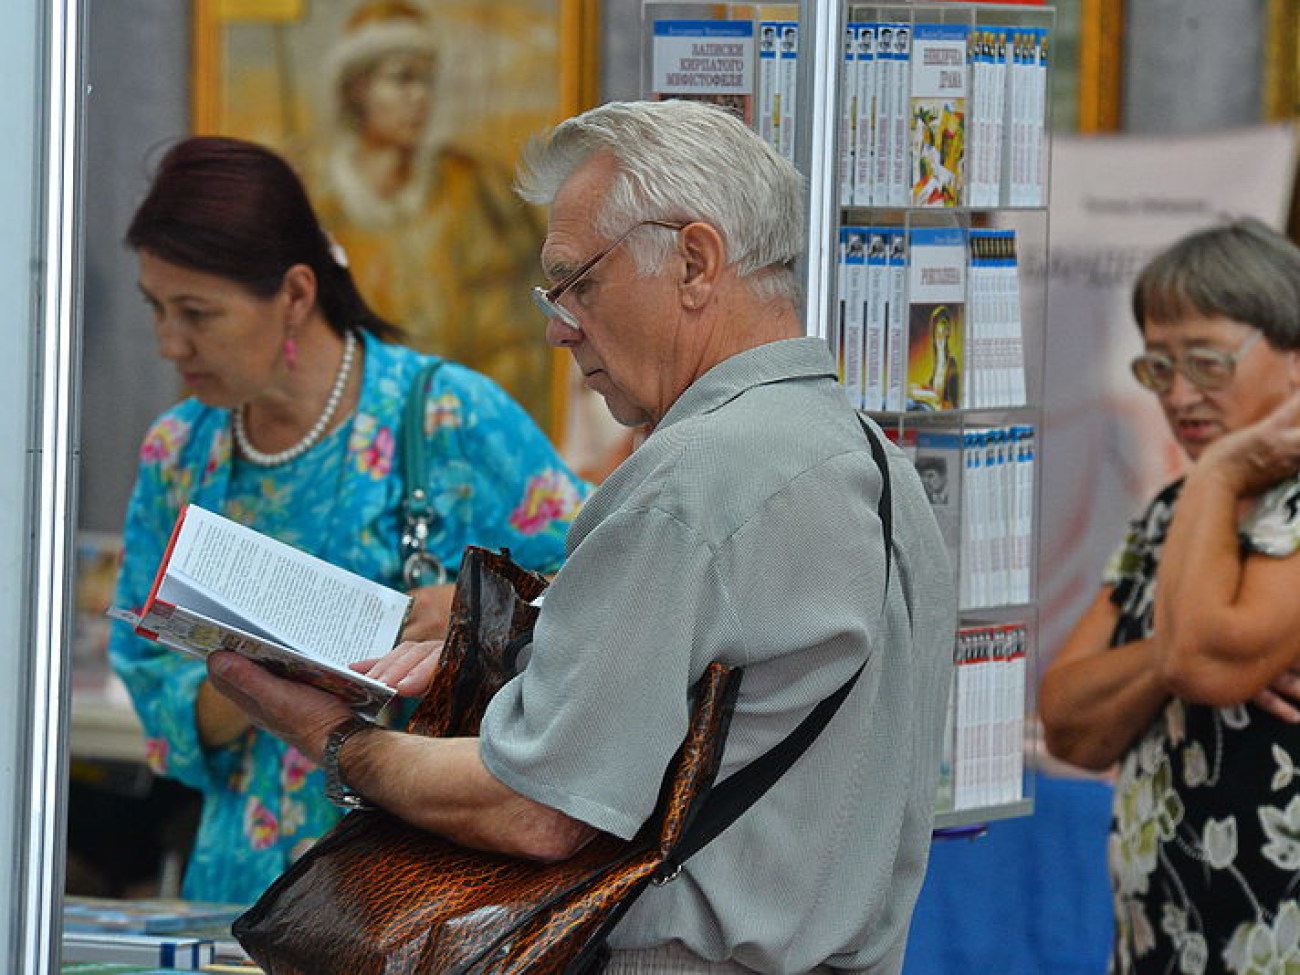 В Киеве ко Дню Знаний открылась ежегодная книжная выставка-ярмарка